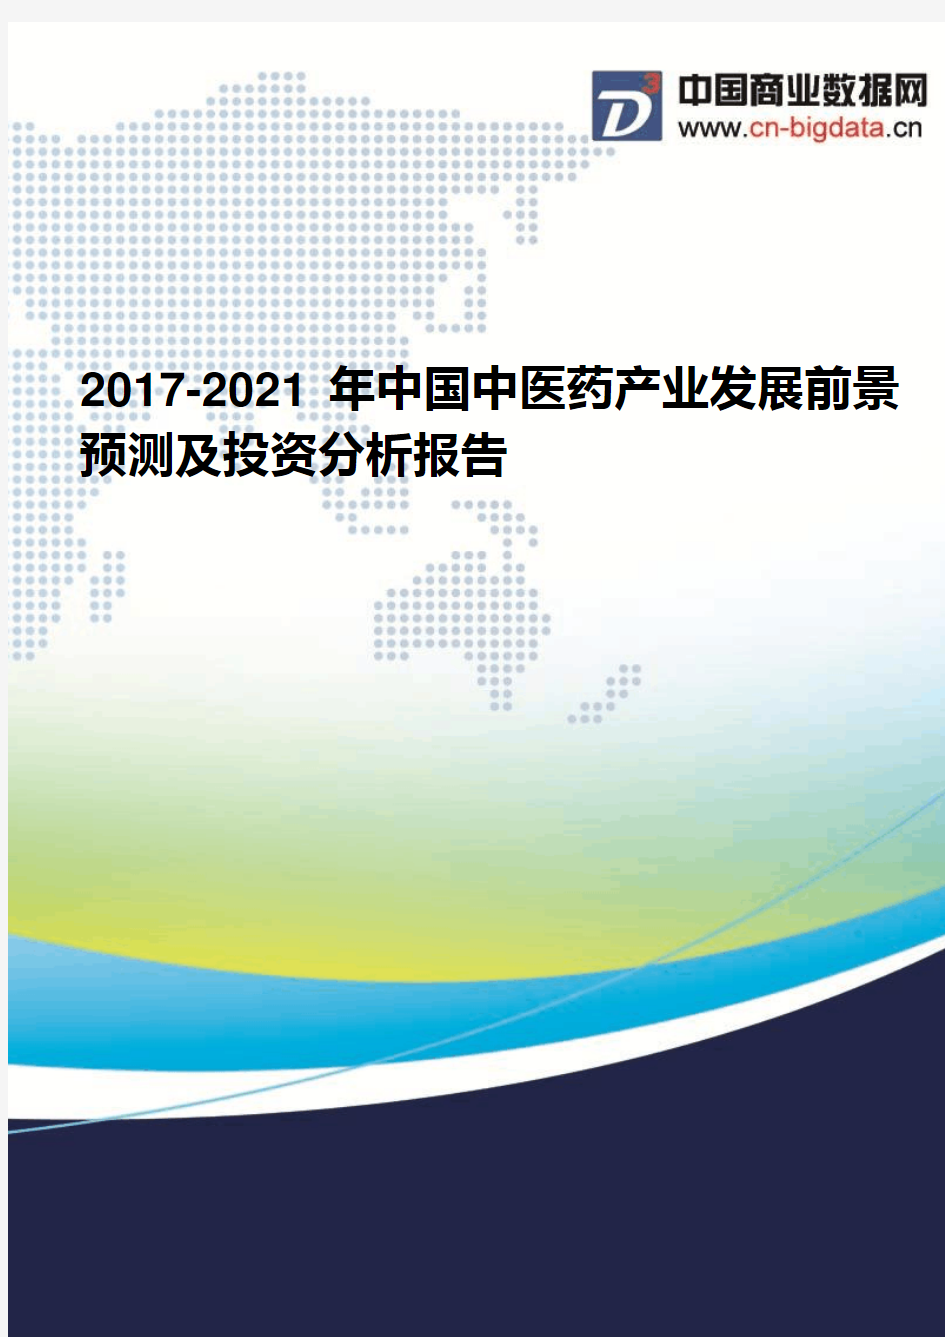 2017-2021年中国中医药产业发展前景预测及投资分析报告(2017版目录)